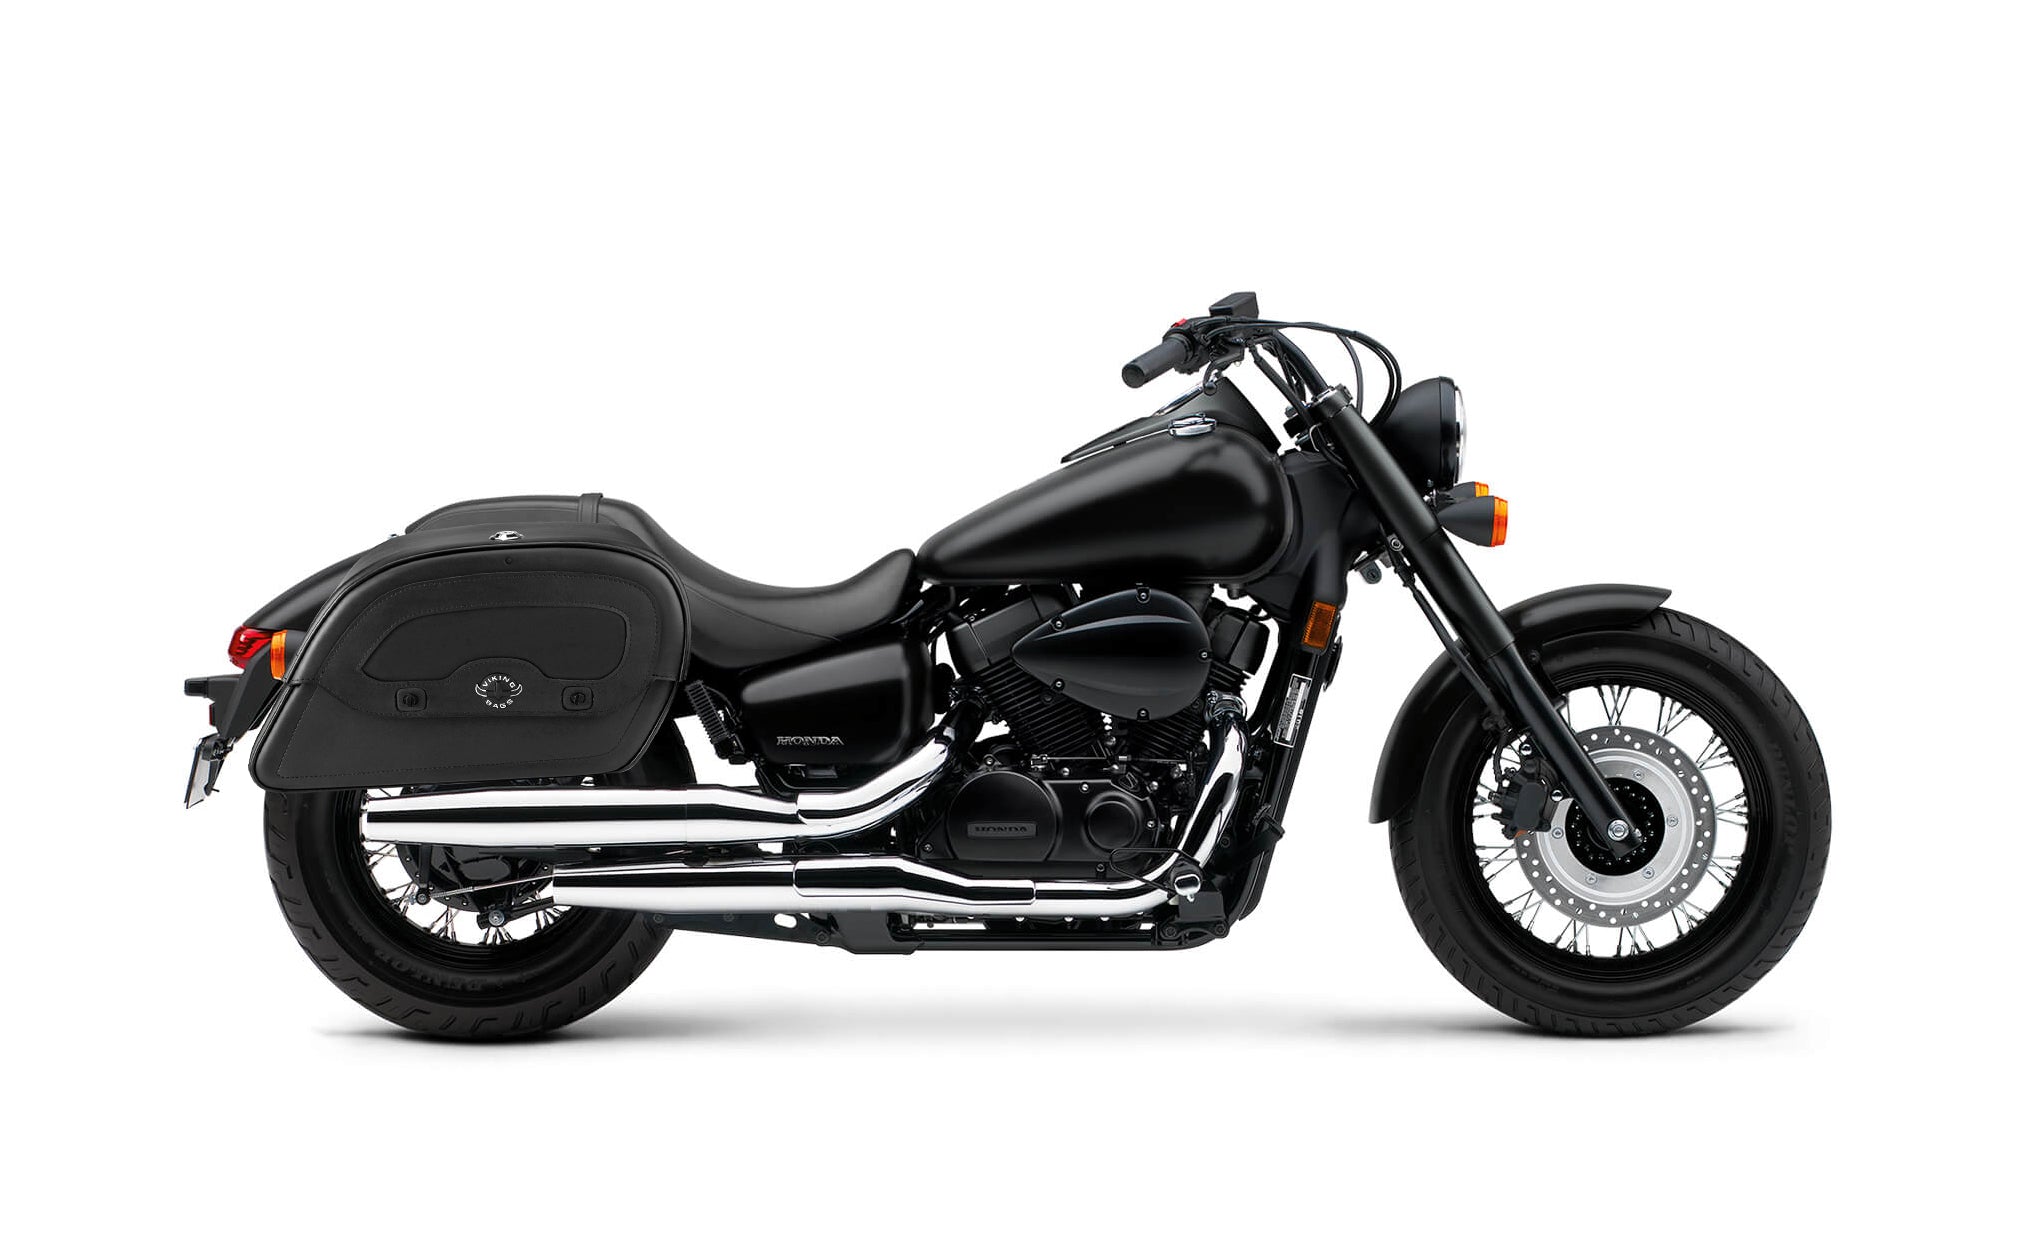 Viking Warrior Large Honda Shadow 750 Phantom Shock Cut Out Leather Motorcycle Saddlebags on Bike Photo @expand